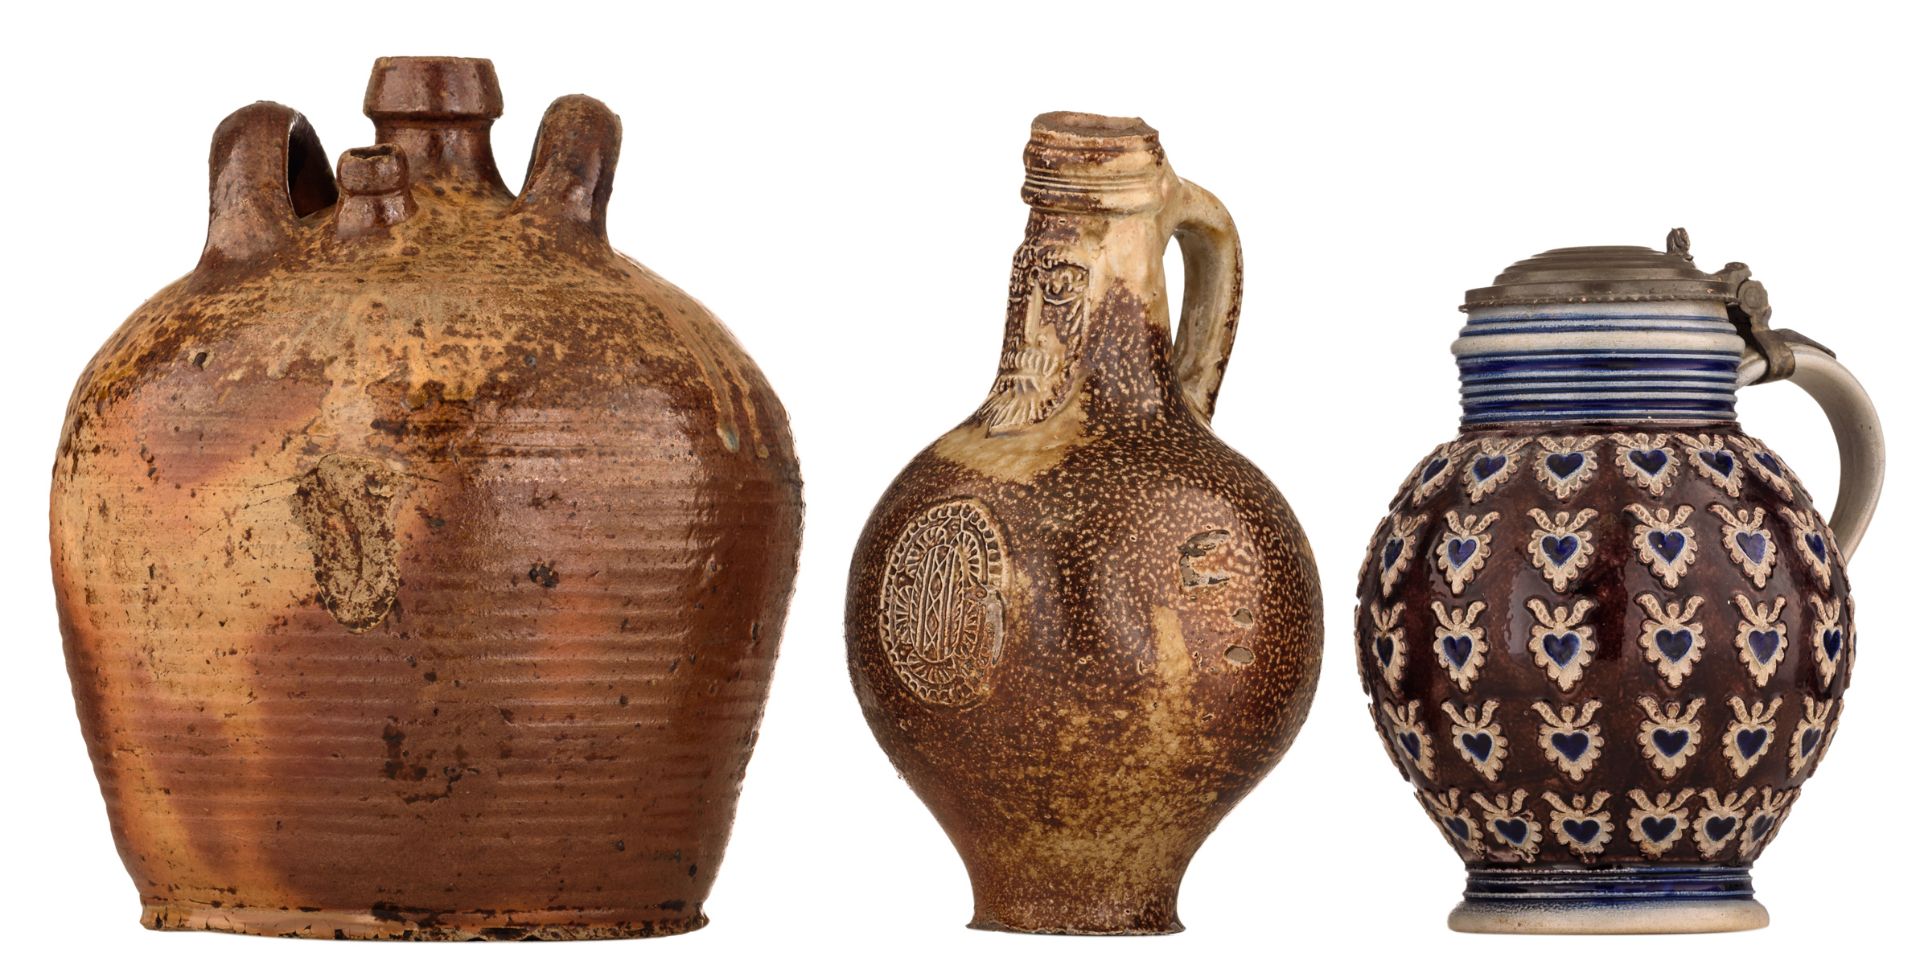 A Frechen stoneware bellarmine jug, 17thC, H 22cm; added: a brown glazed stoneware jug, H 24 cm;